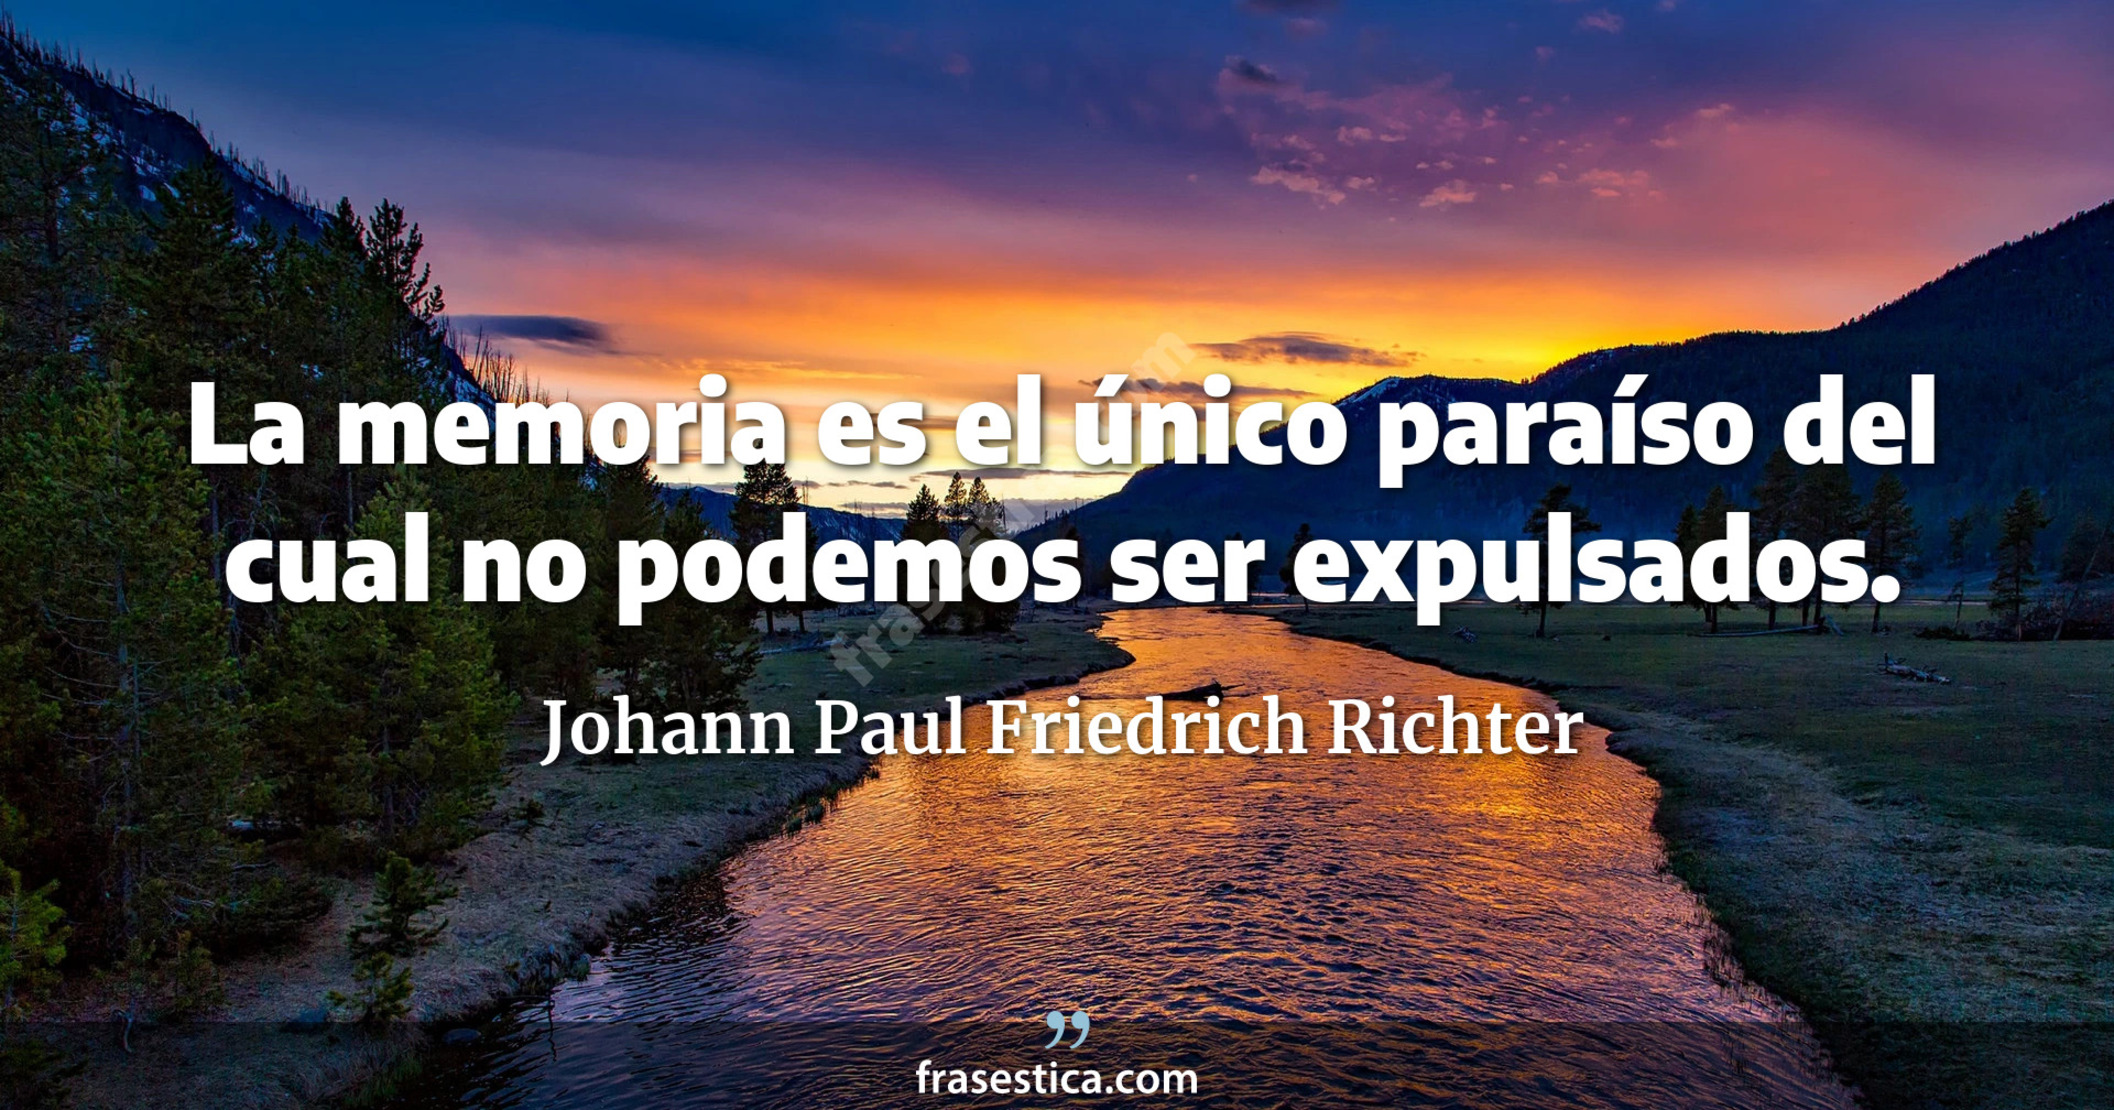 La memoria es el único paraíso del cual no podemos ser expulsados. - Johann Paul Friedrich Richter